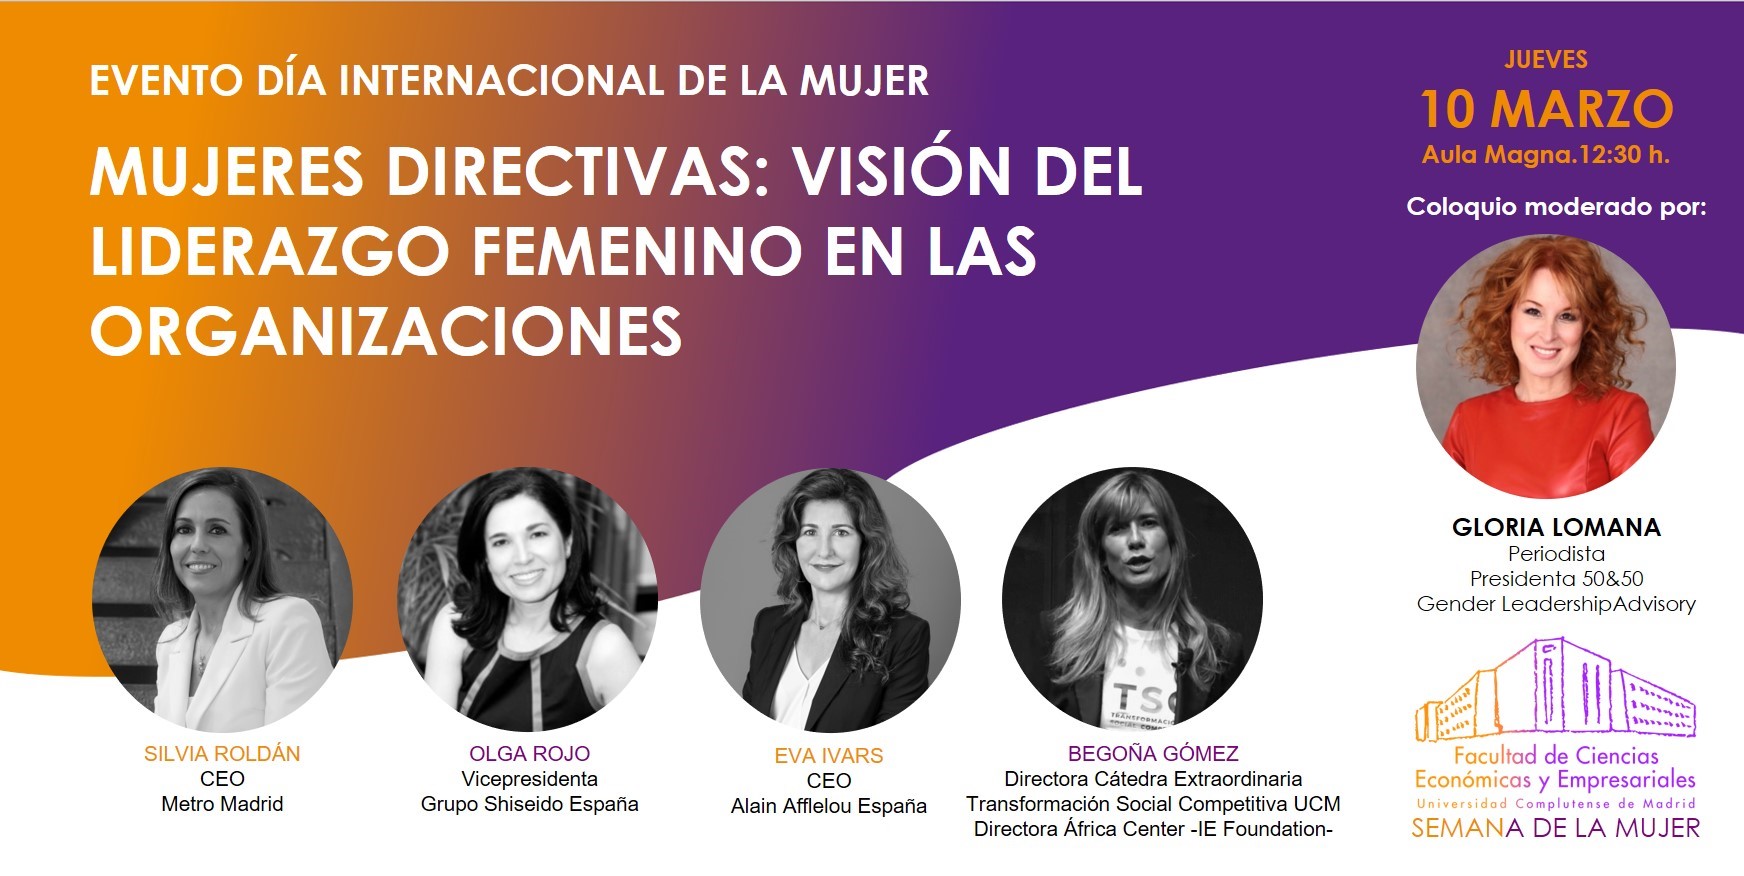 Coloquio "Mujeres Directivas: Visión del Liderazgo Femenino en las Organizaciones", grabación disponible - 1